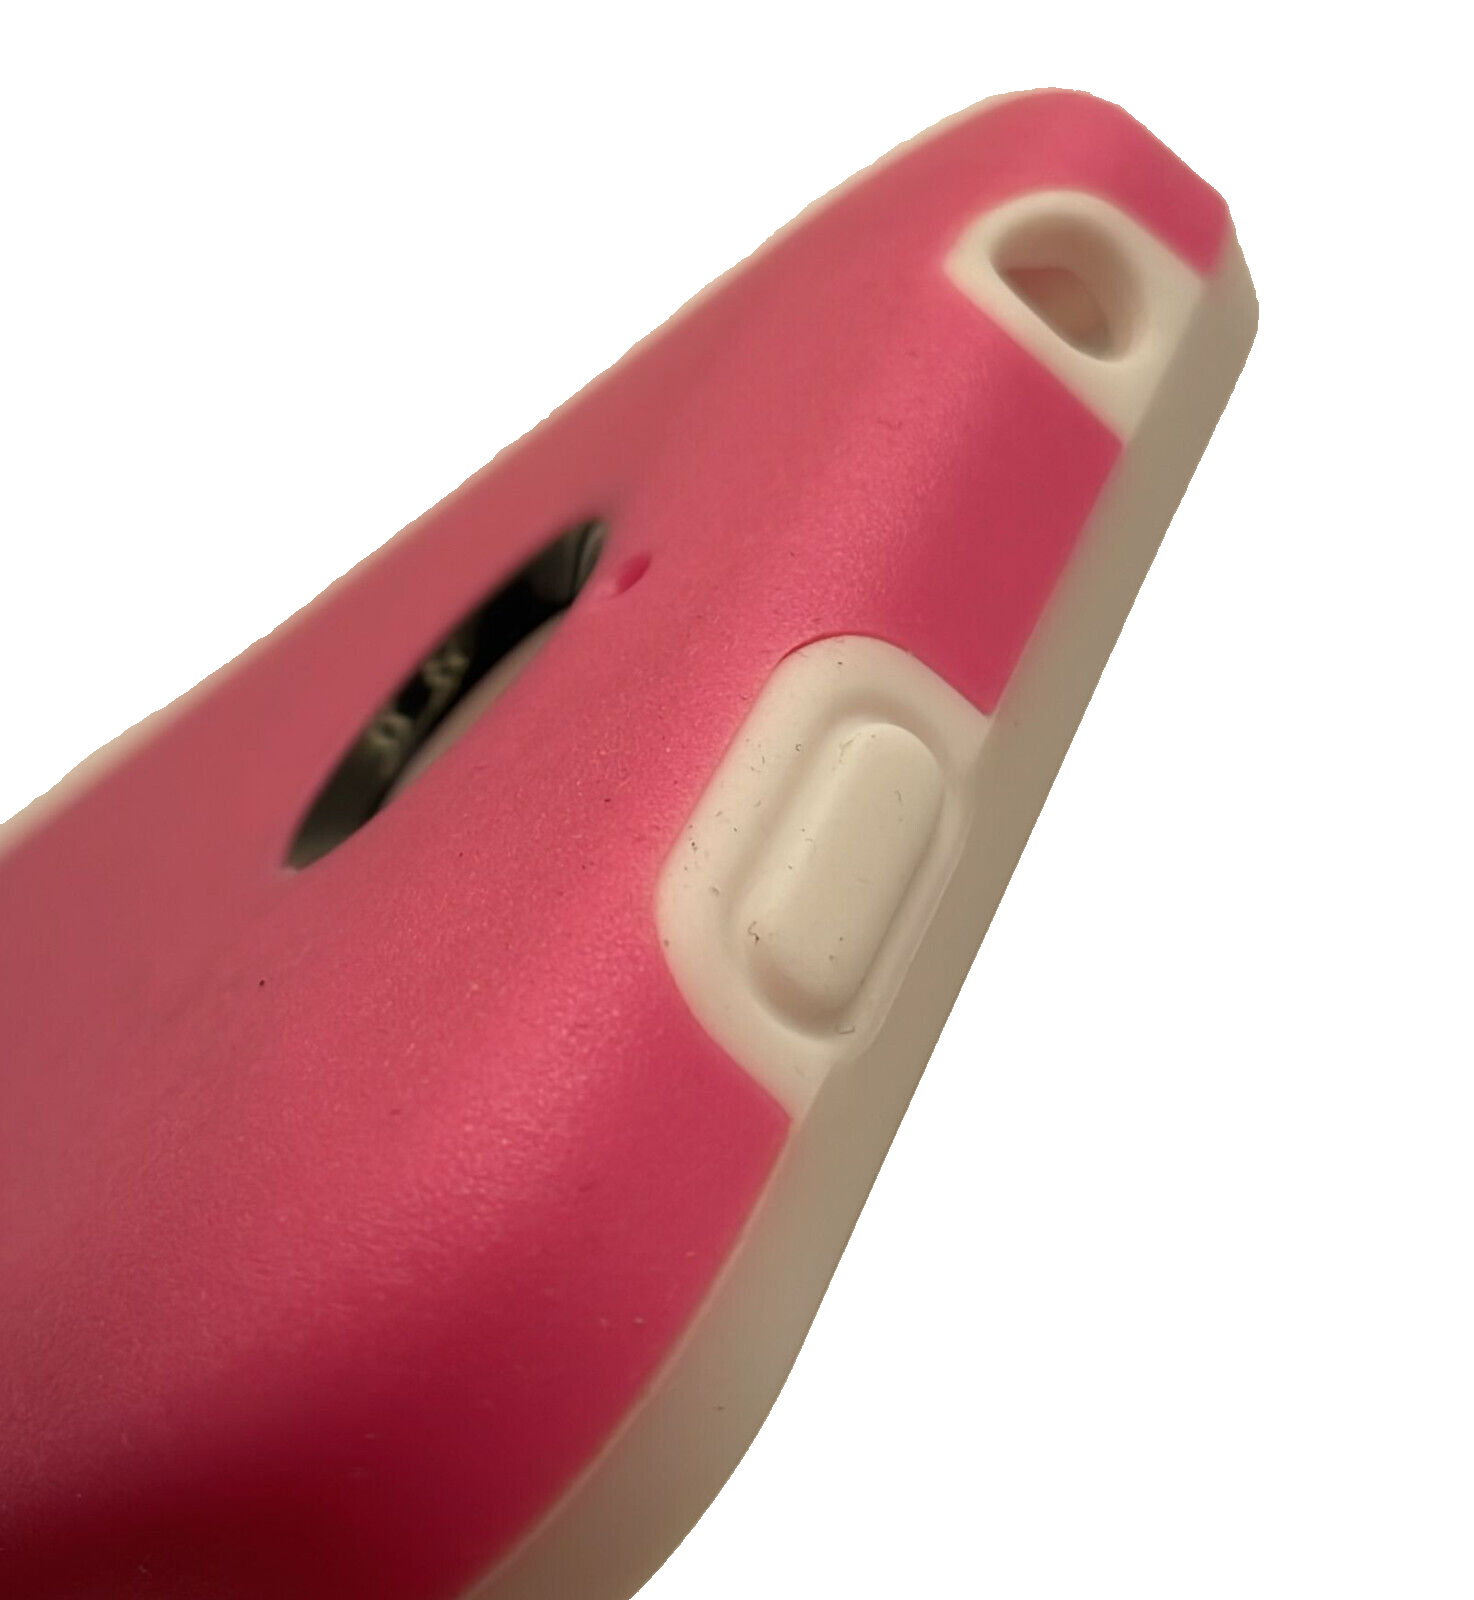 ONDIGO Intact Hard Case for HTC Desire 510 - Pink/White ONDIGO D510-PNKWHT - фотография #3